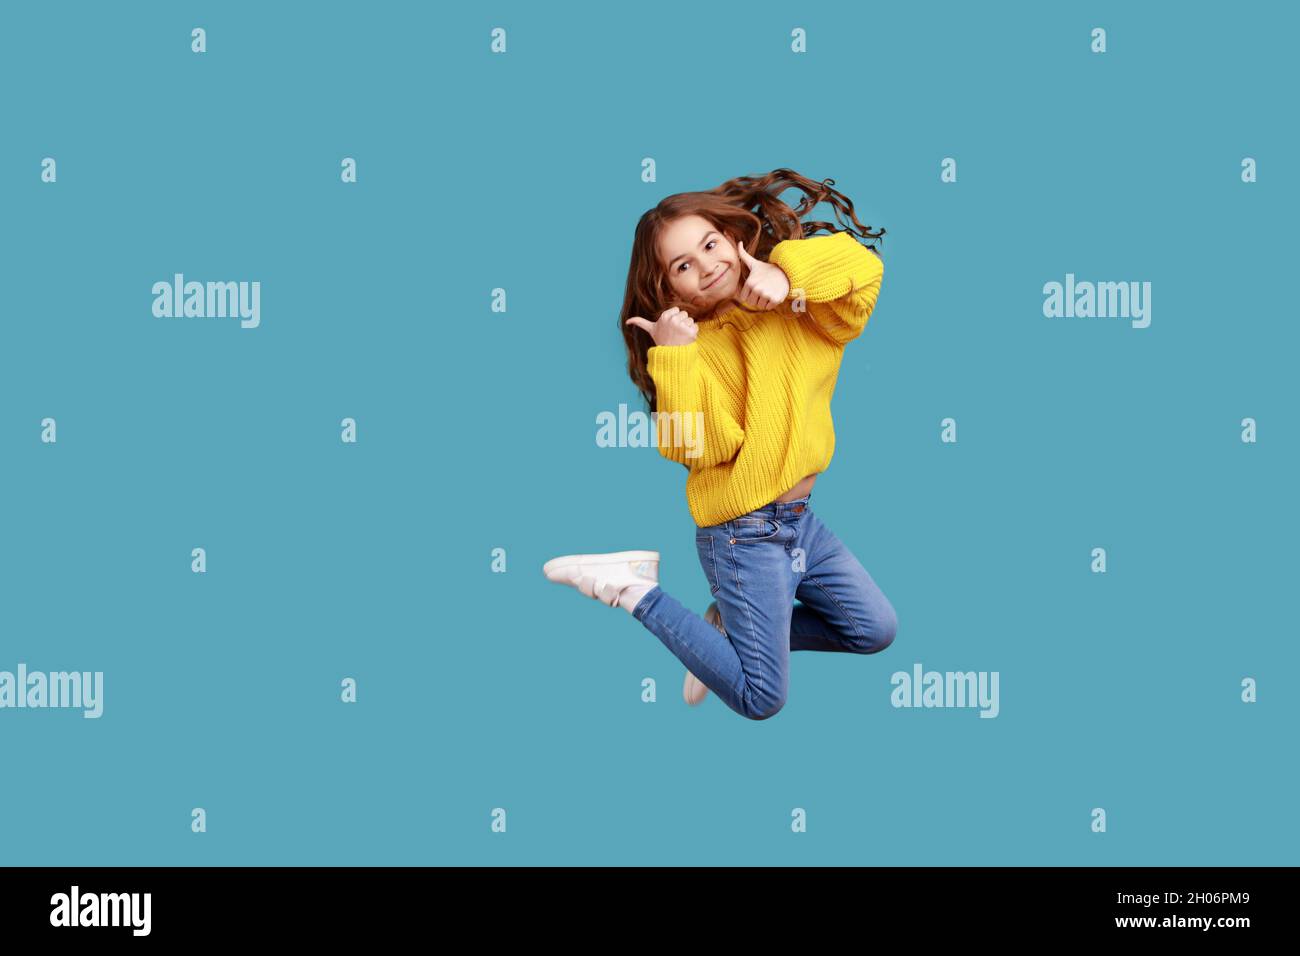 Retrato completo de feliz encantadora niña saltando alto y mostrando el pulgar hasta la cámara, usando un jersey amarillo estilo informal. Estudio en interior grabado aislado sobre fondo azul. Foto de stock